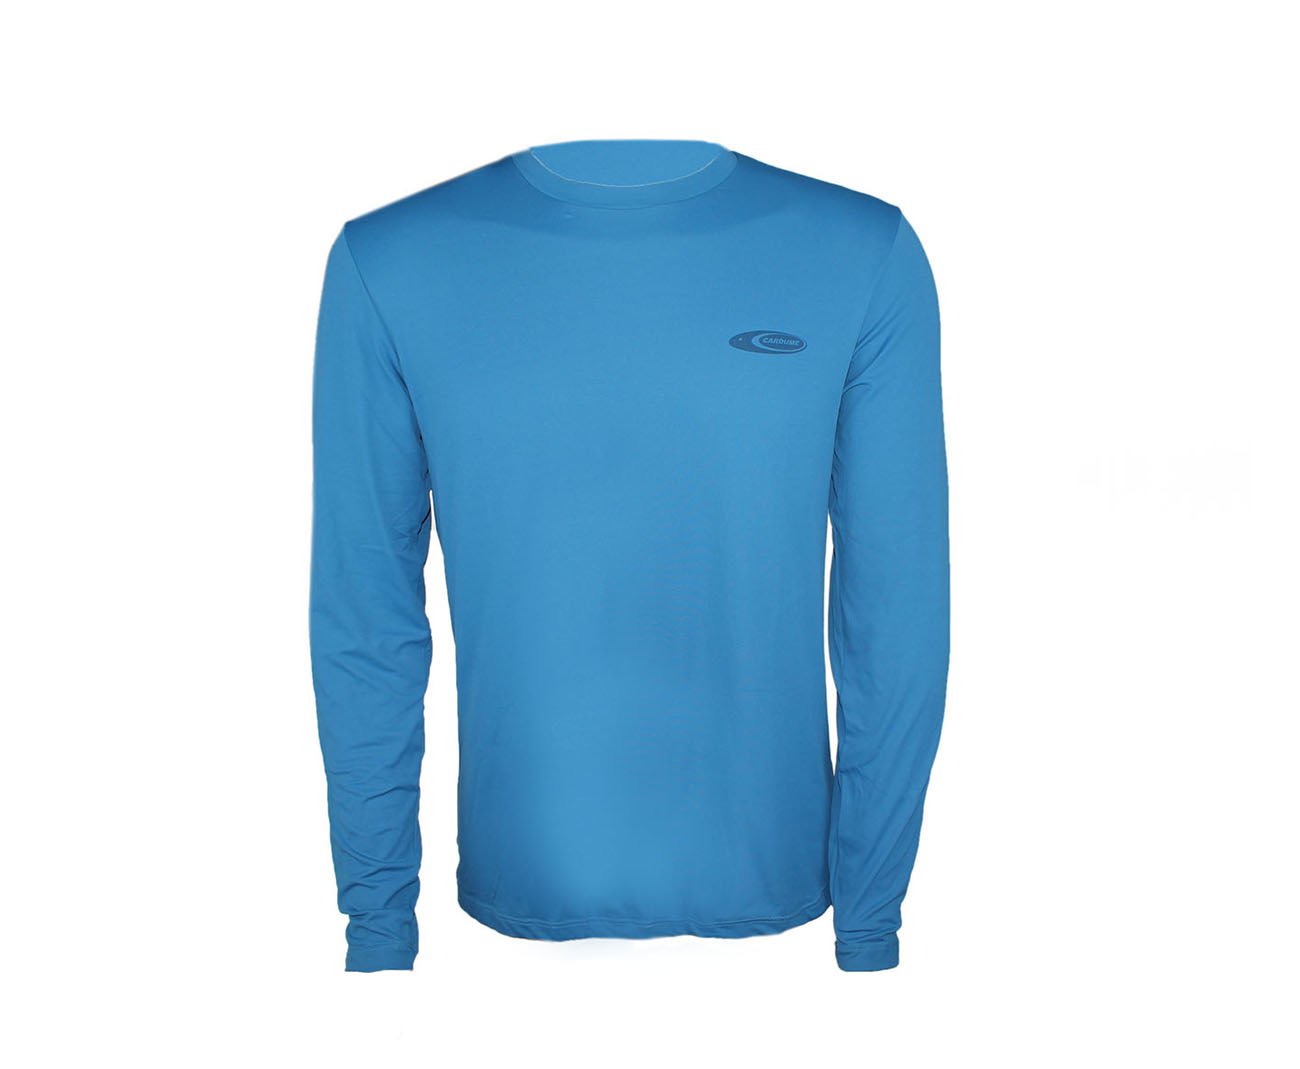 Camiseta Softline Azul - Proteção Uva/uvb 50+ Fps - Cardume - P